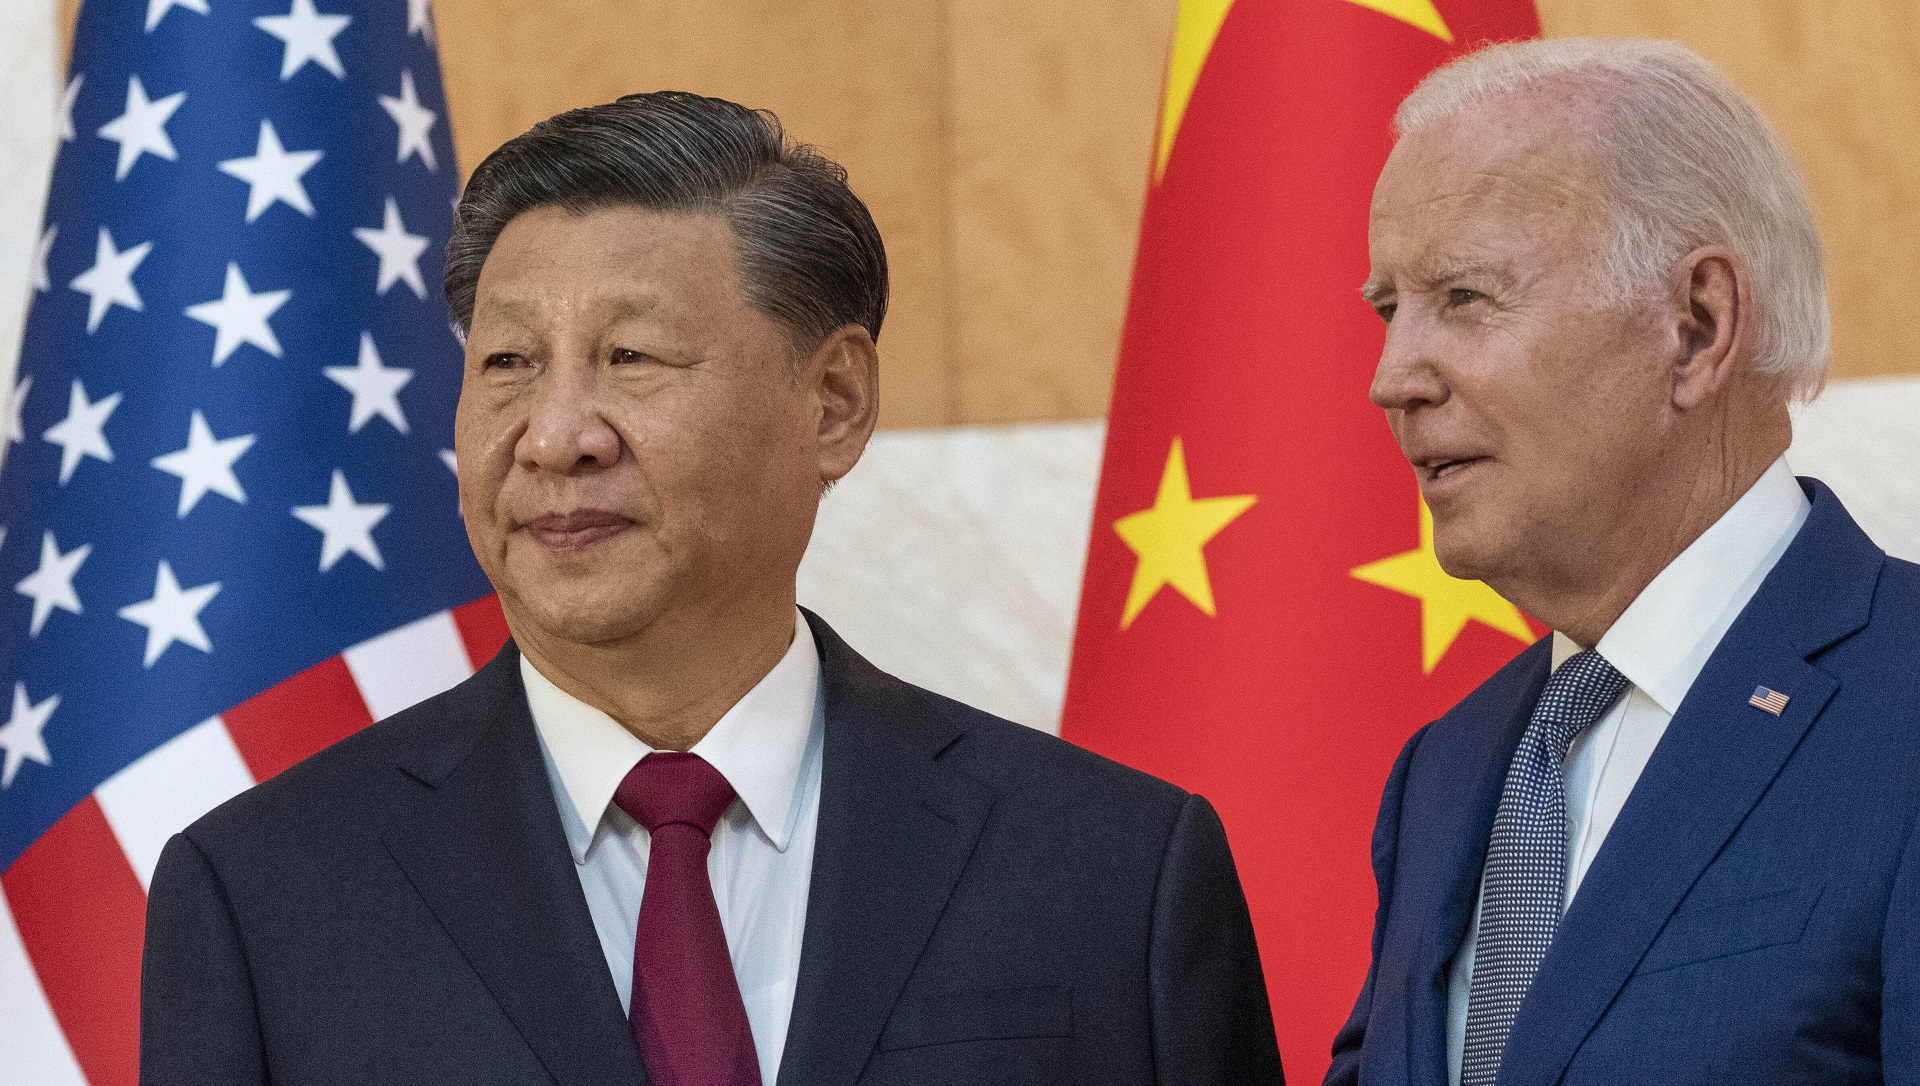 Estados Unidos y la visita de Xi Jinping a Putin